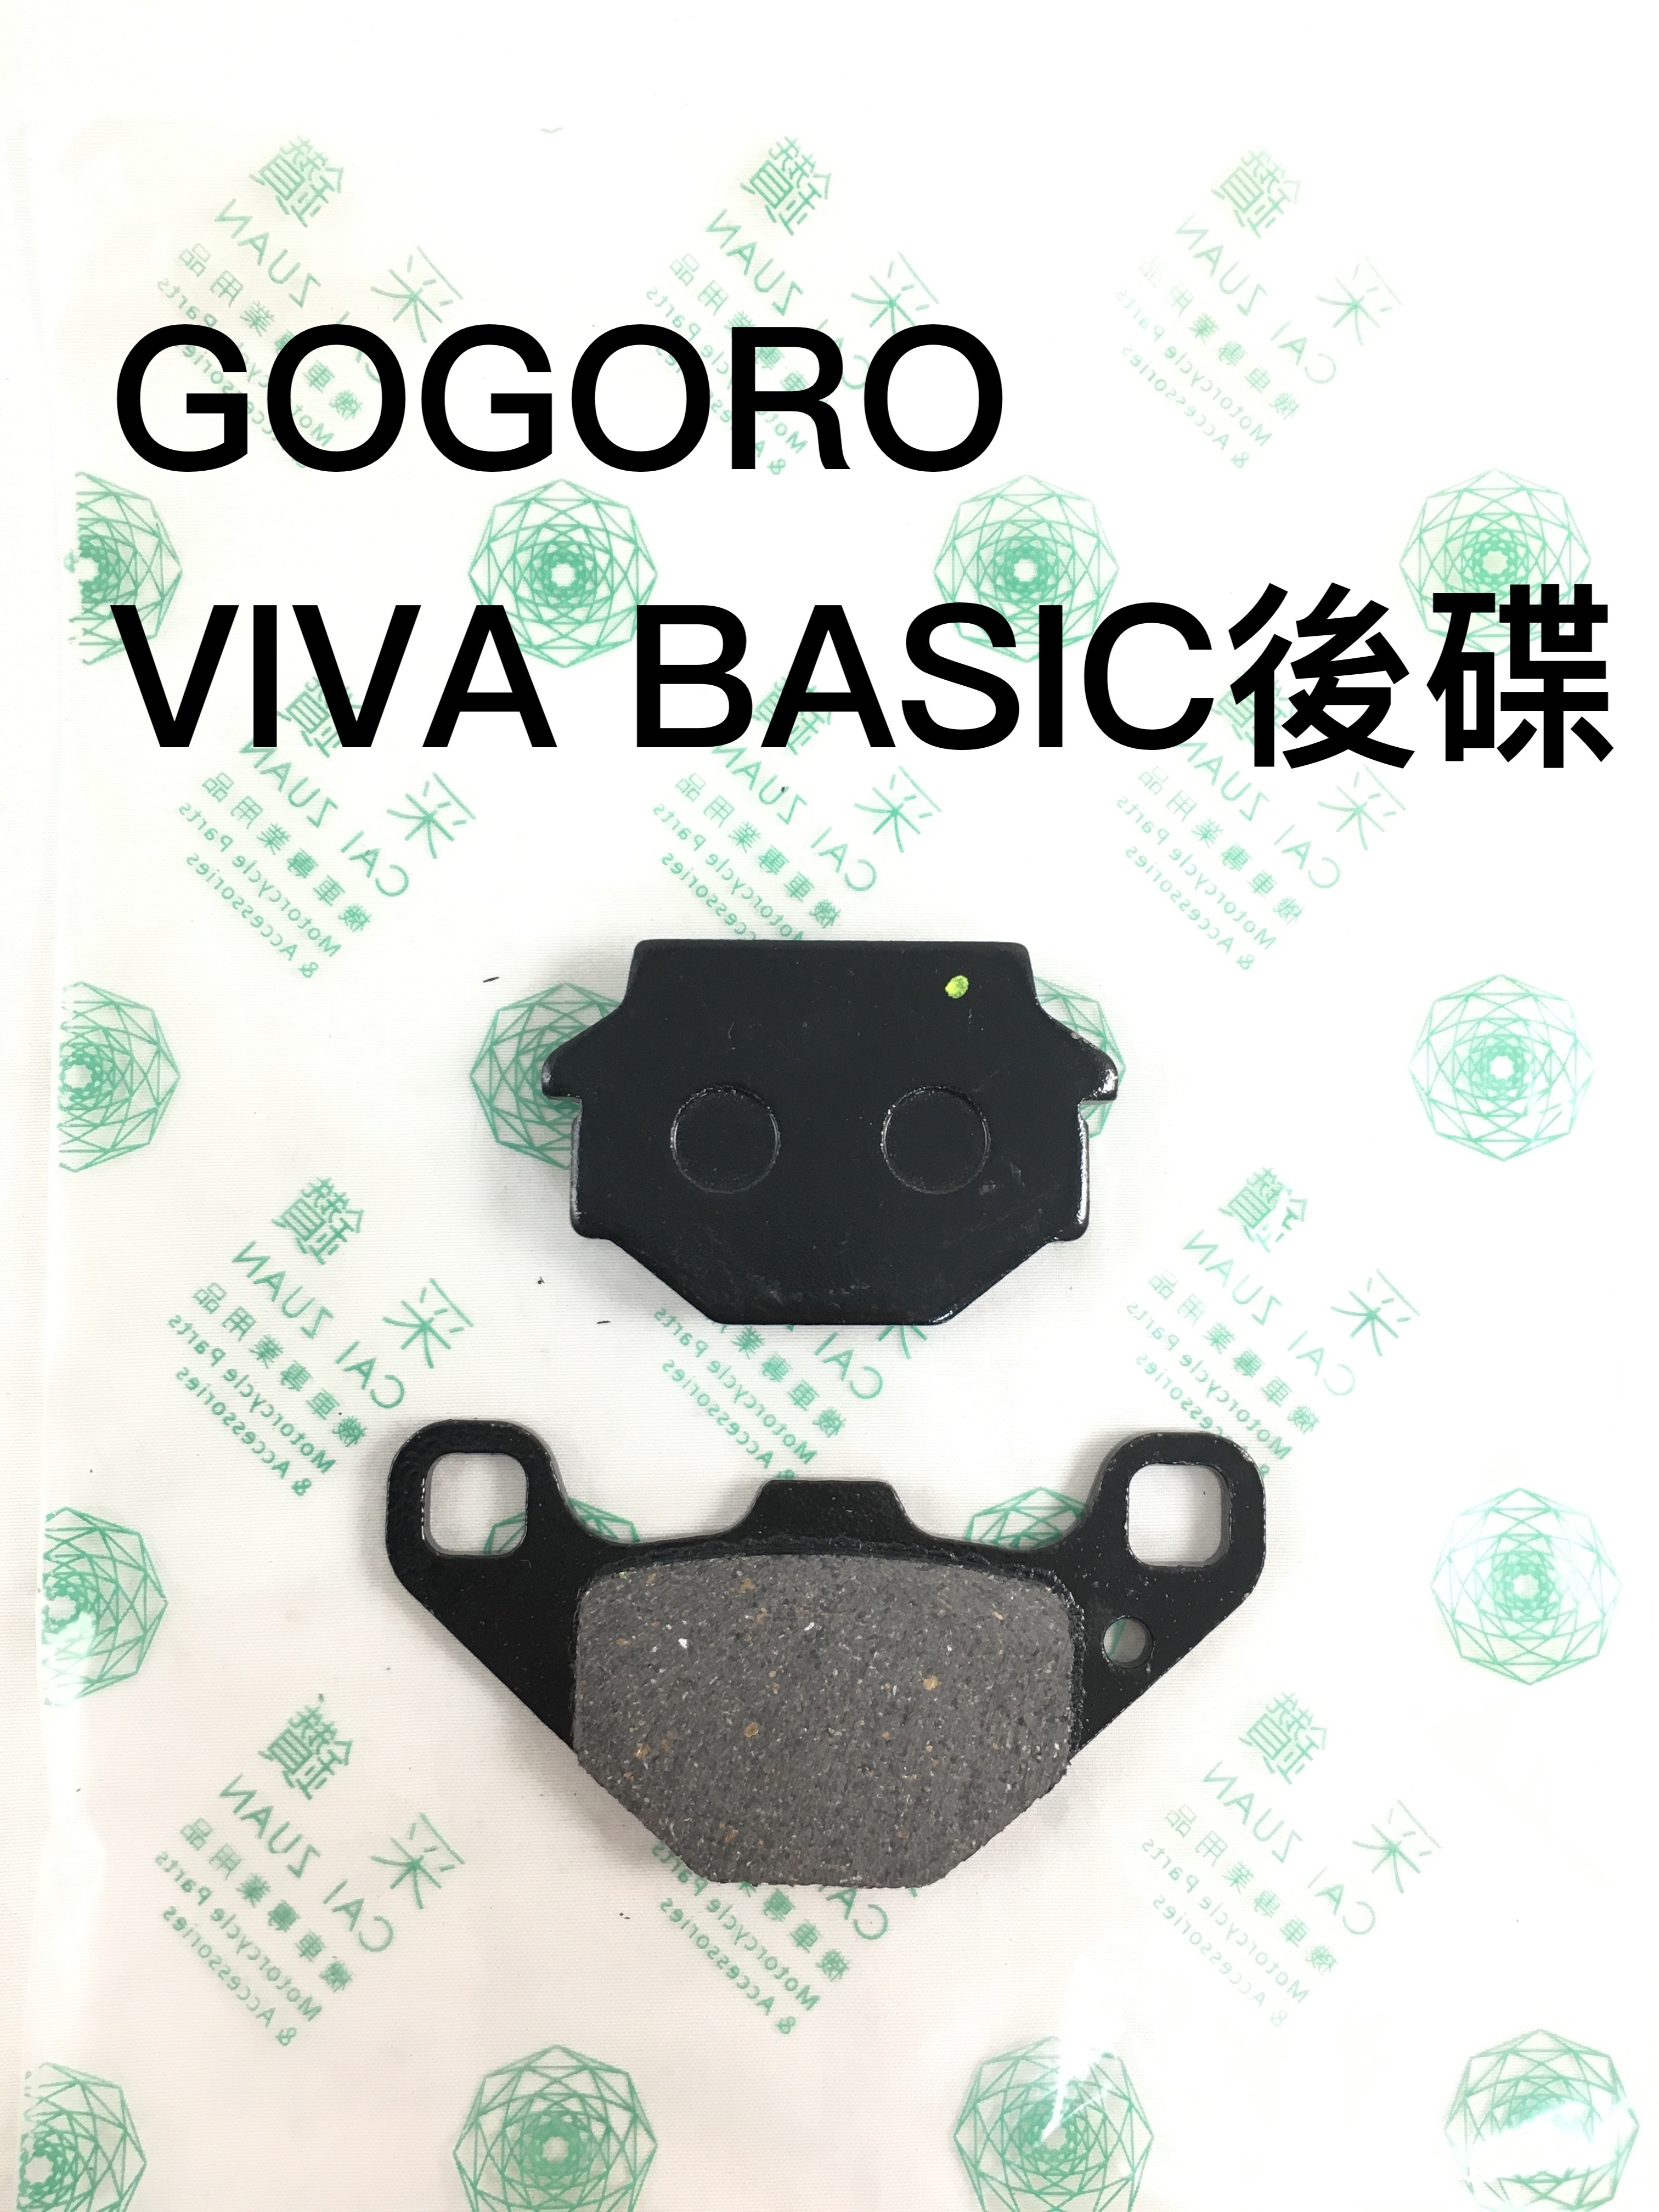 【安德魯ANDREW】台中采鑽公司貨 GOGORO VIVA BASIC後碟煞煞車皮 台灣製造